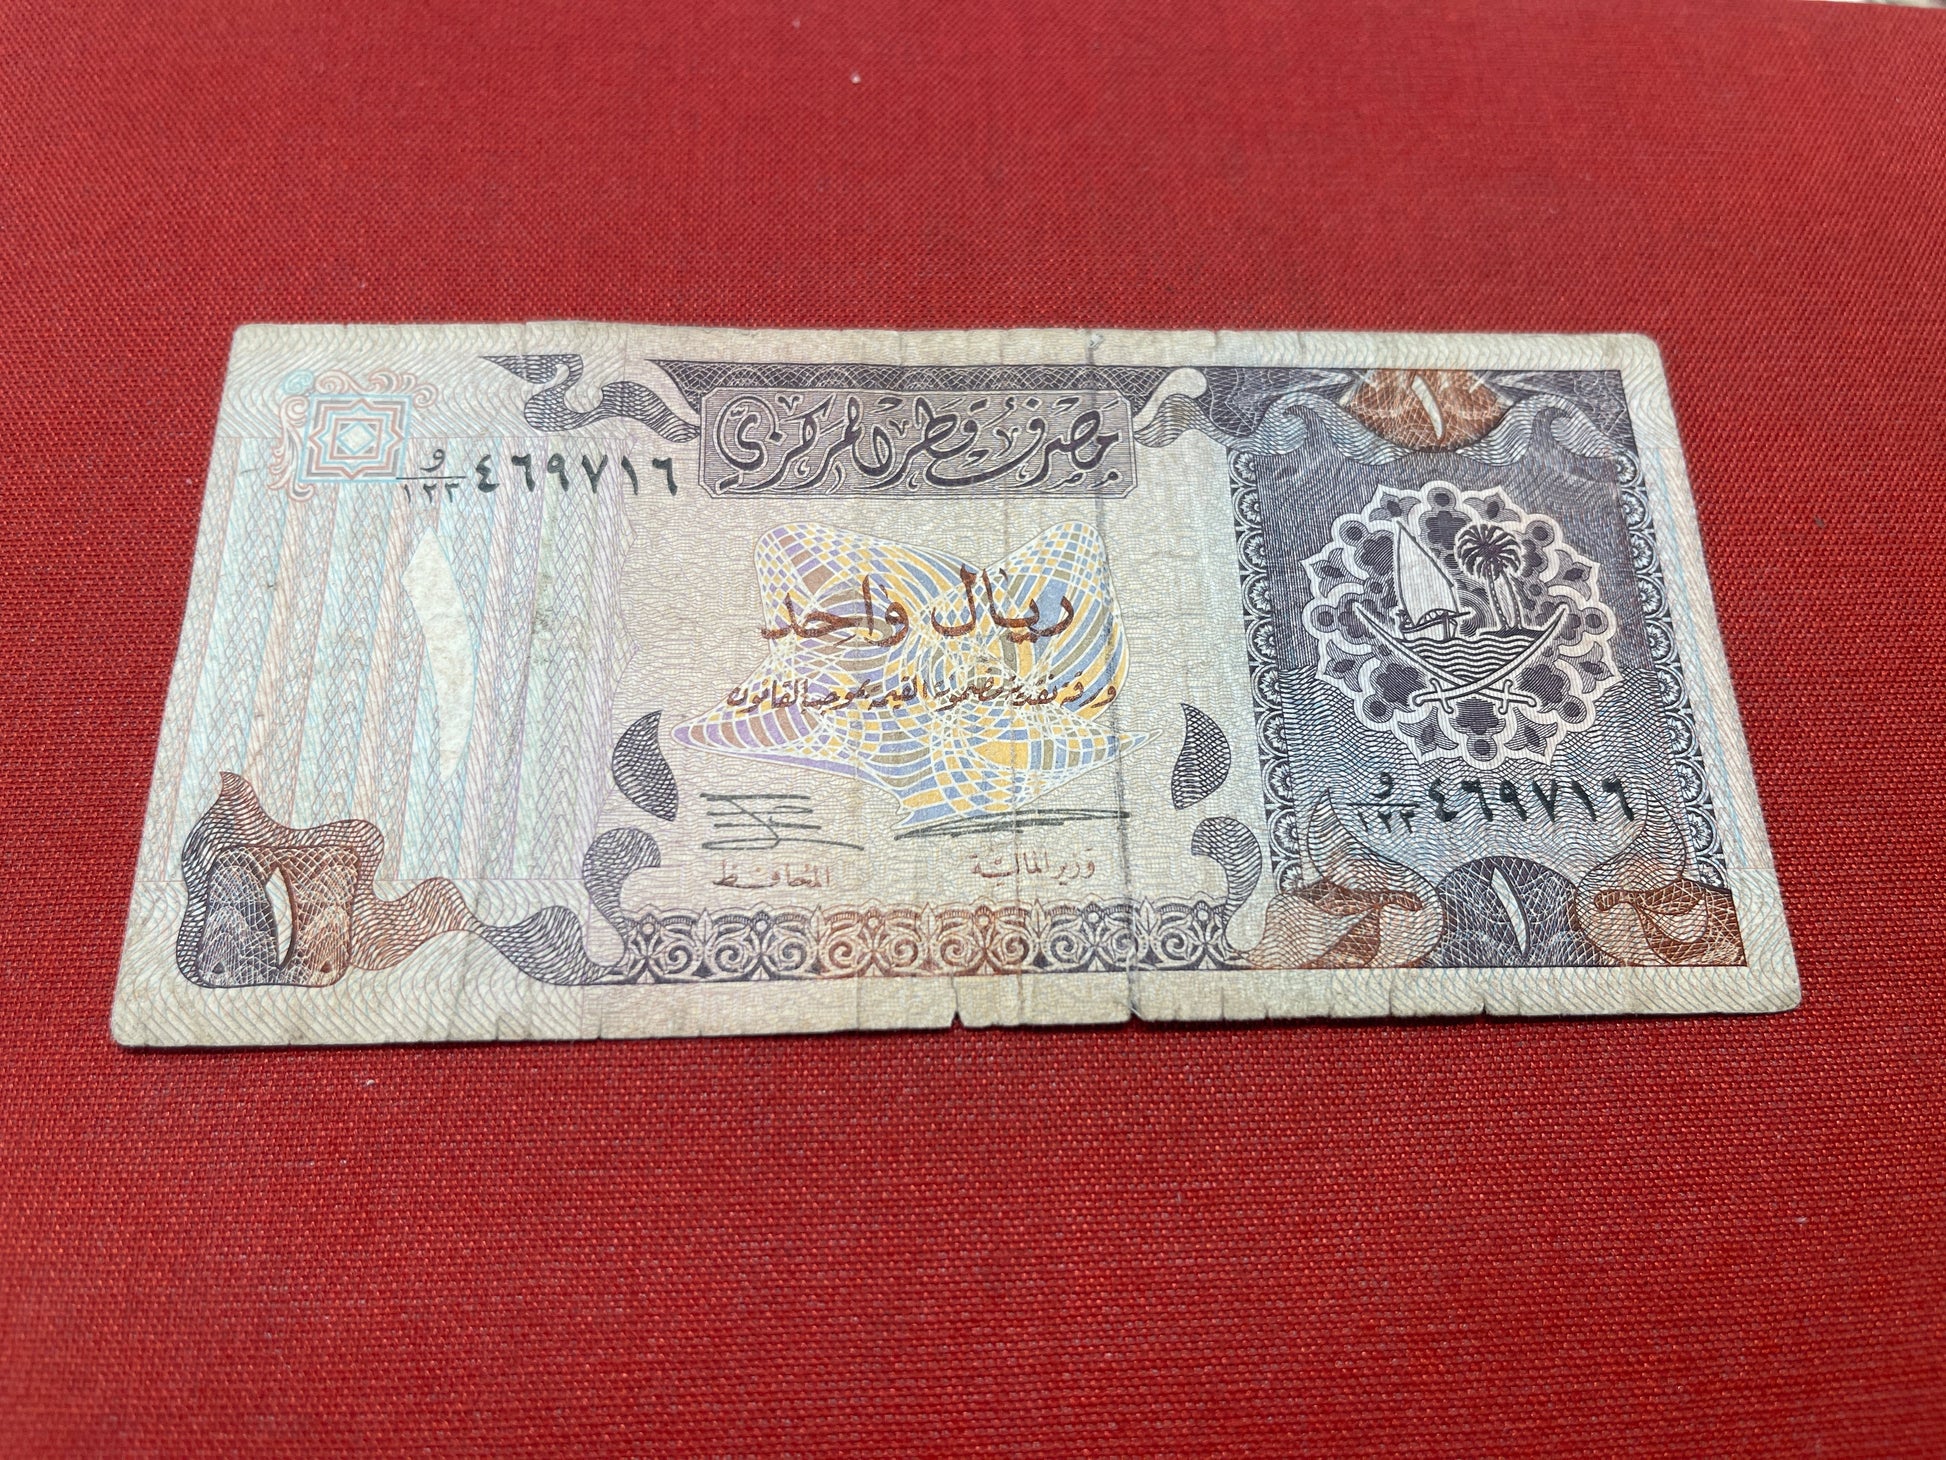 Qatar Central Bank One Riyal 